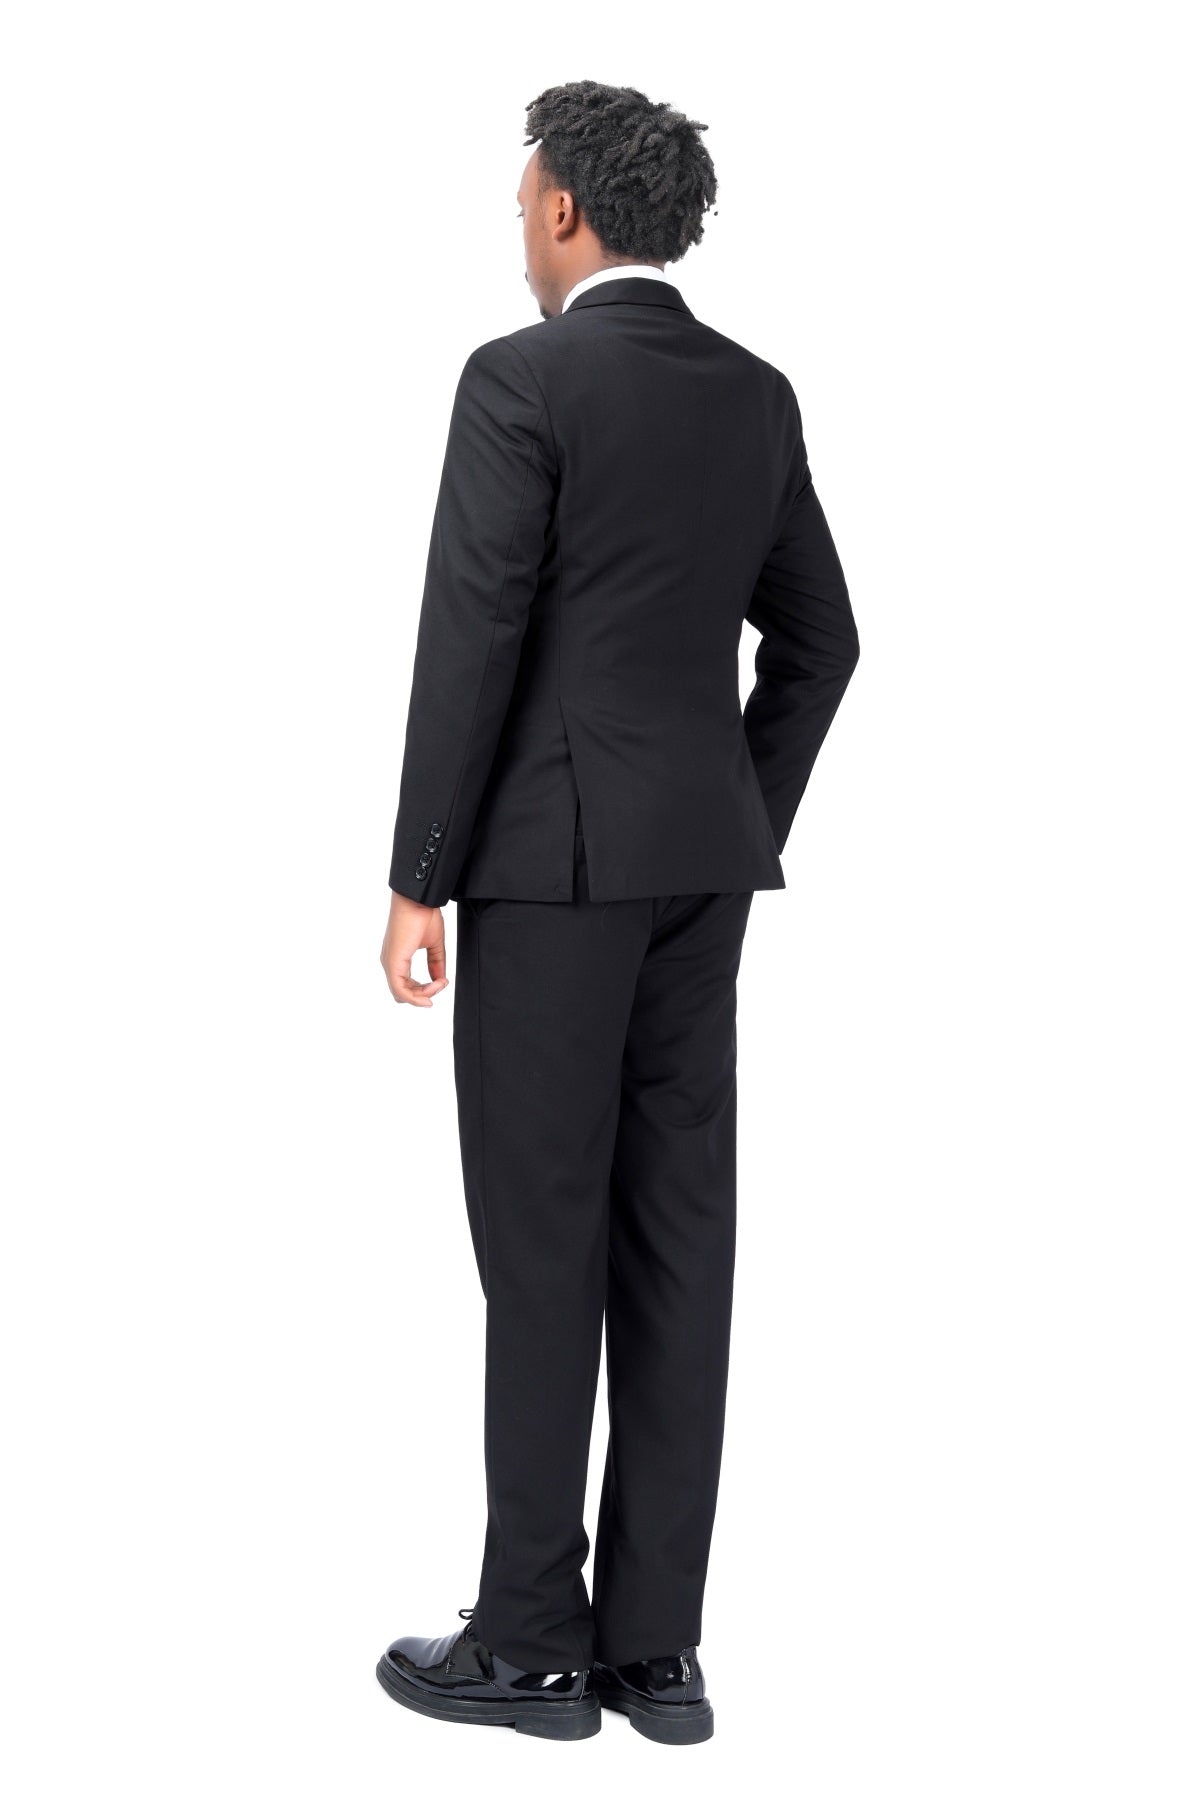 3-Piece One Button Formal Suit Black Suit